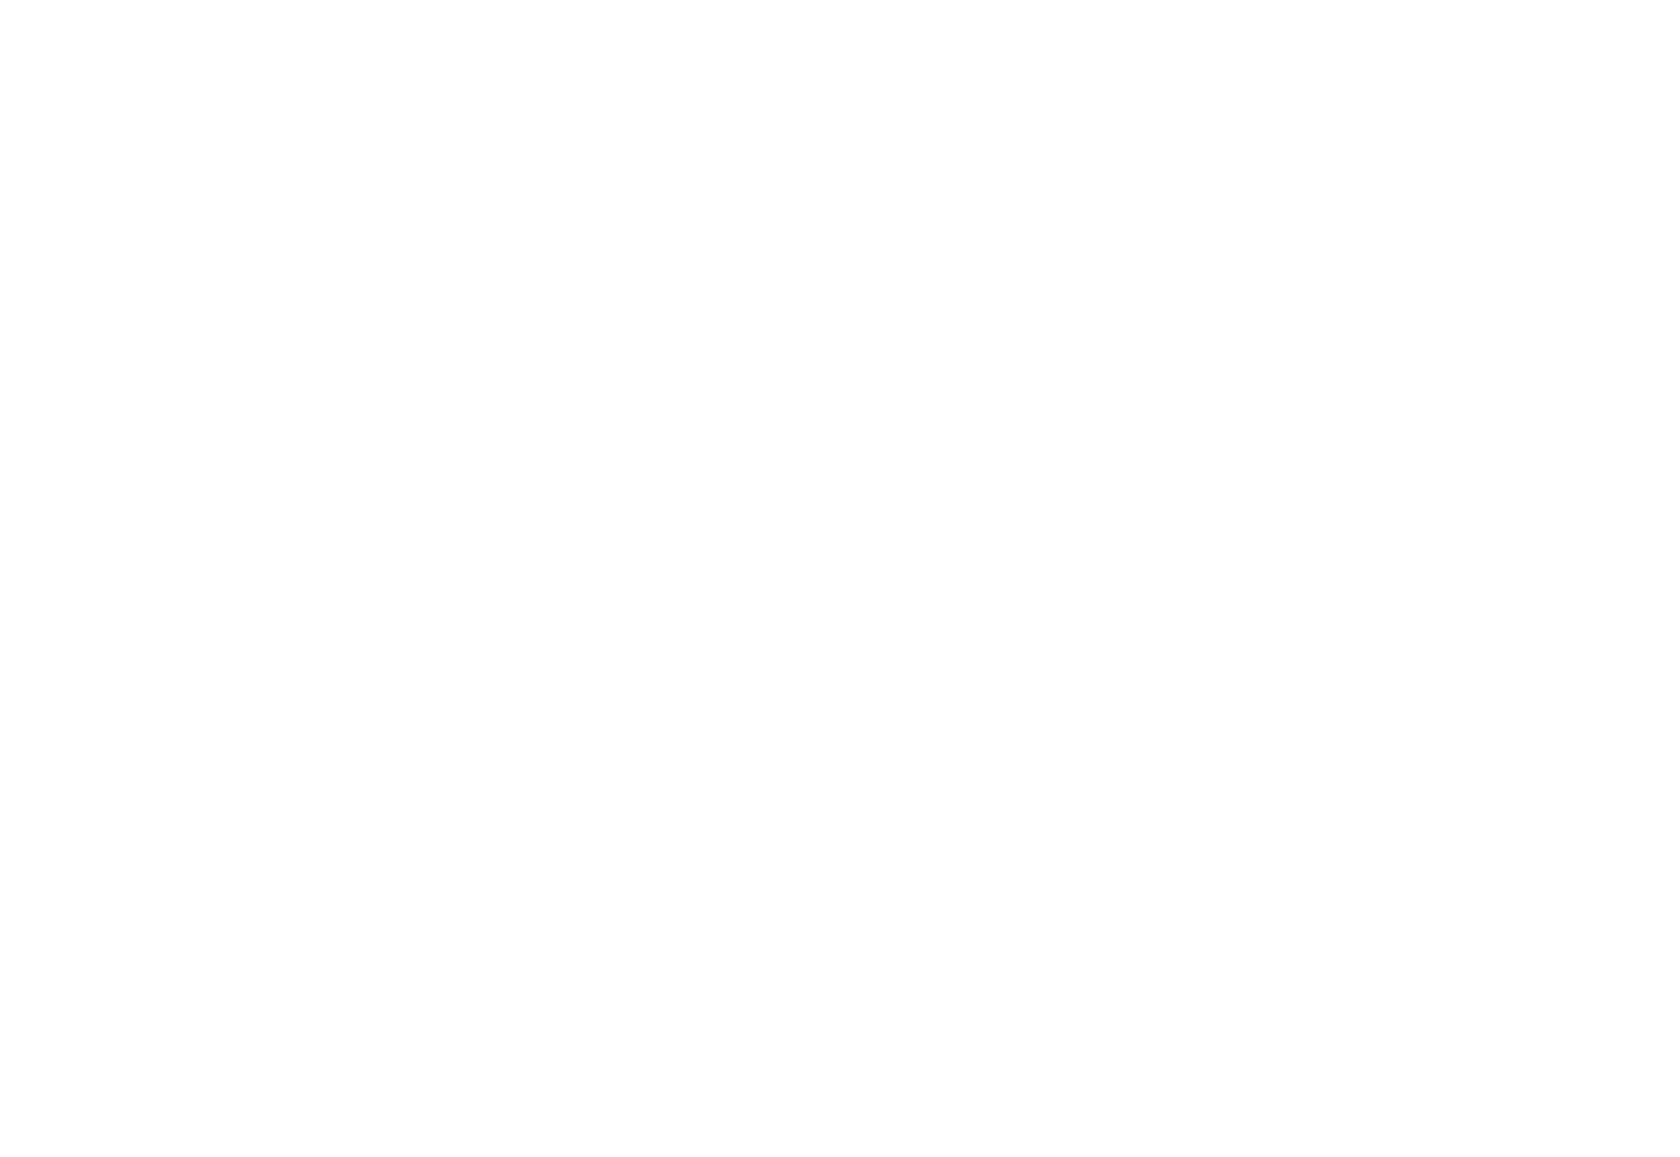 Современный лёгкий для восприятия лендинг в иллюстрированном стиле для компании Асгард-Констракшн, выполняющей кадастровые работы и помогающей быстрее оформить право собственности на объекты недвижимости в Росреестре